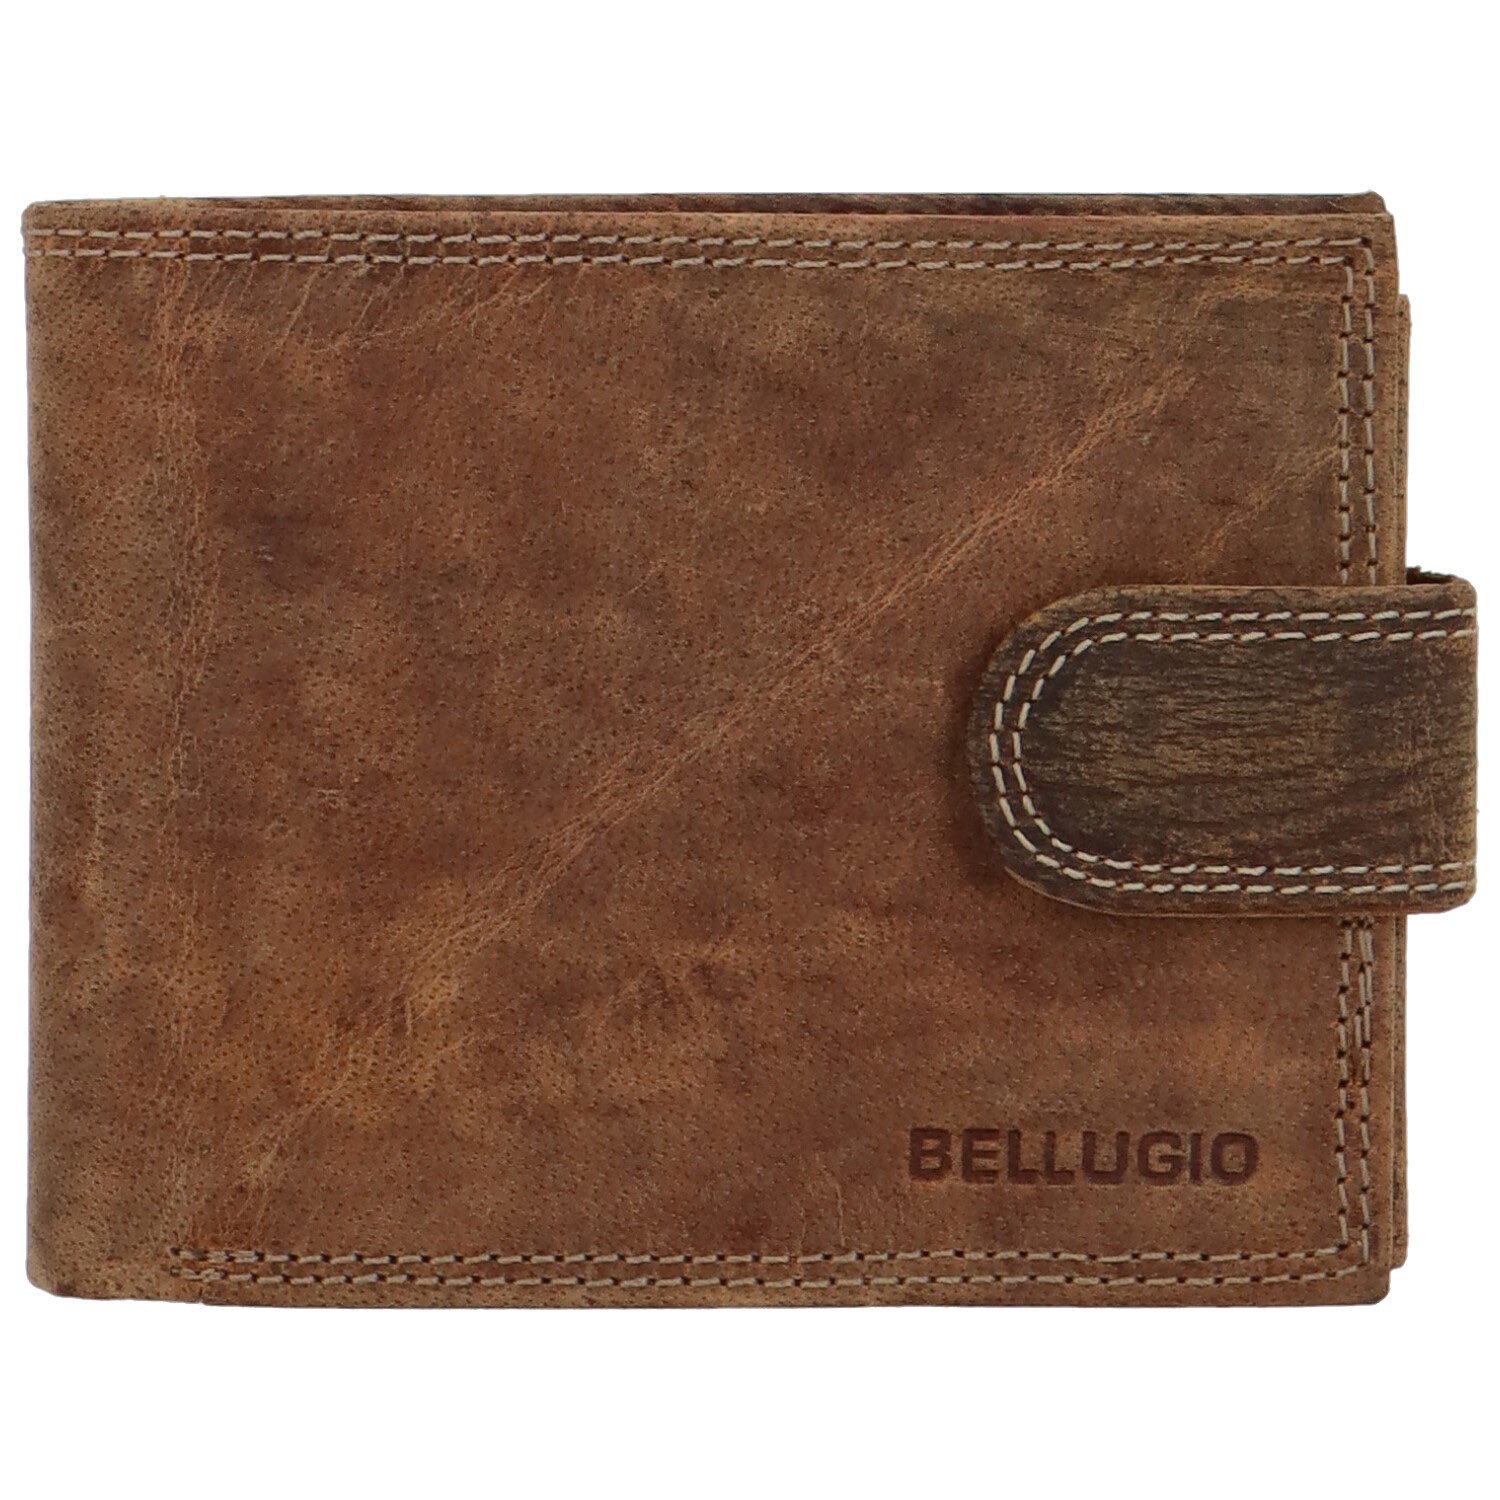 Pánska kožená peňaženka svetlohnedá - Bellugio Santiago